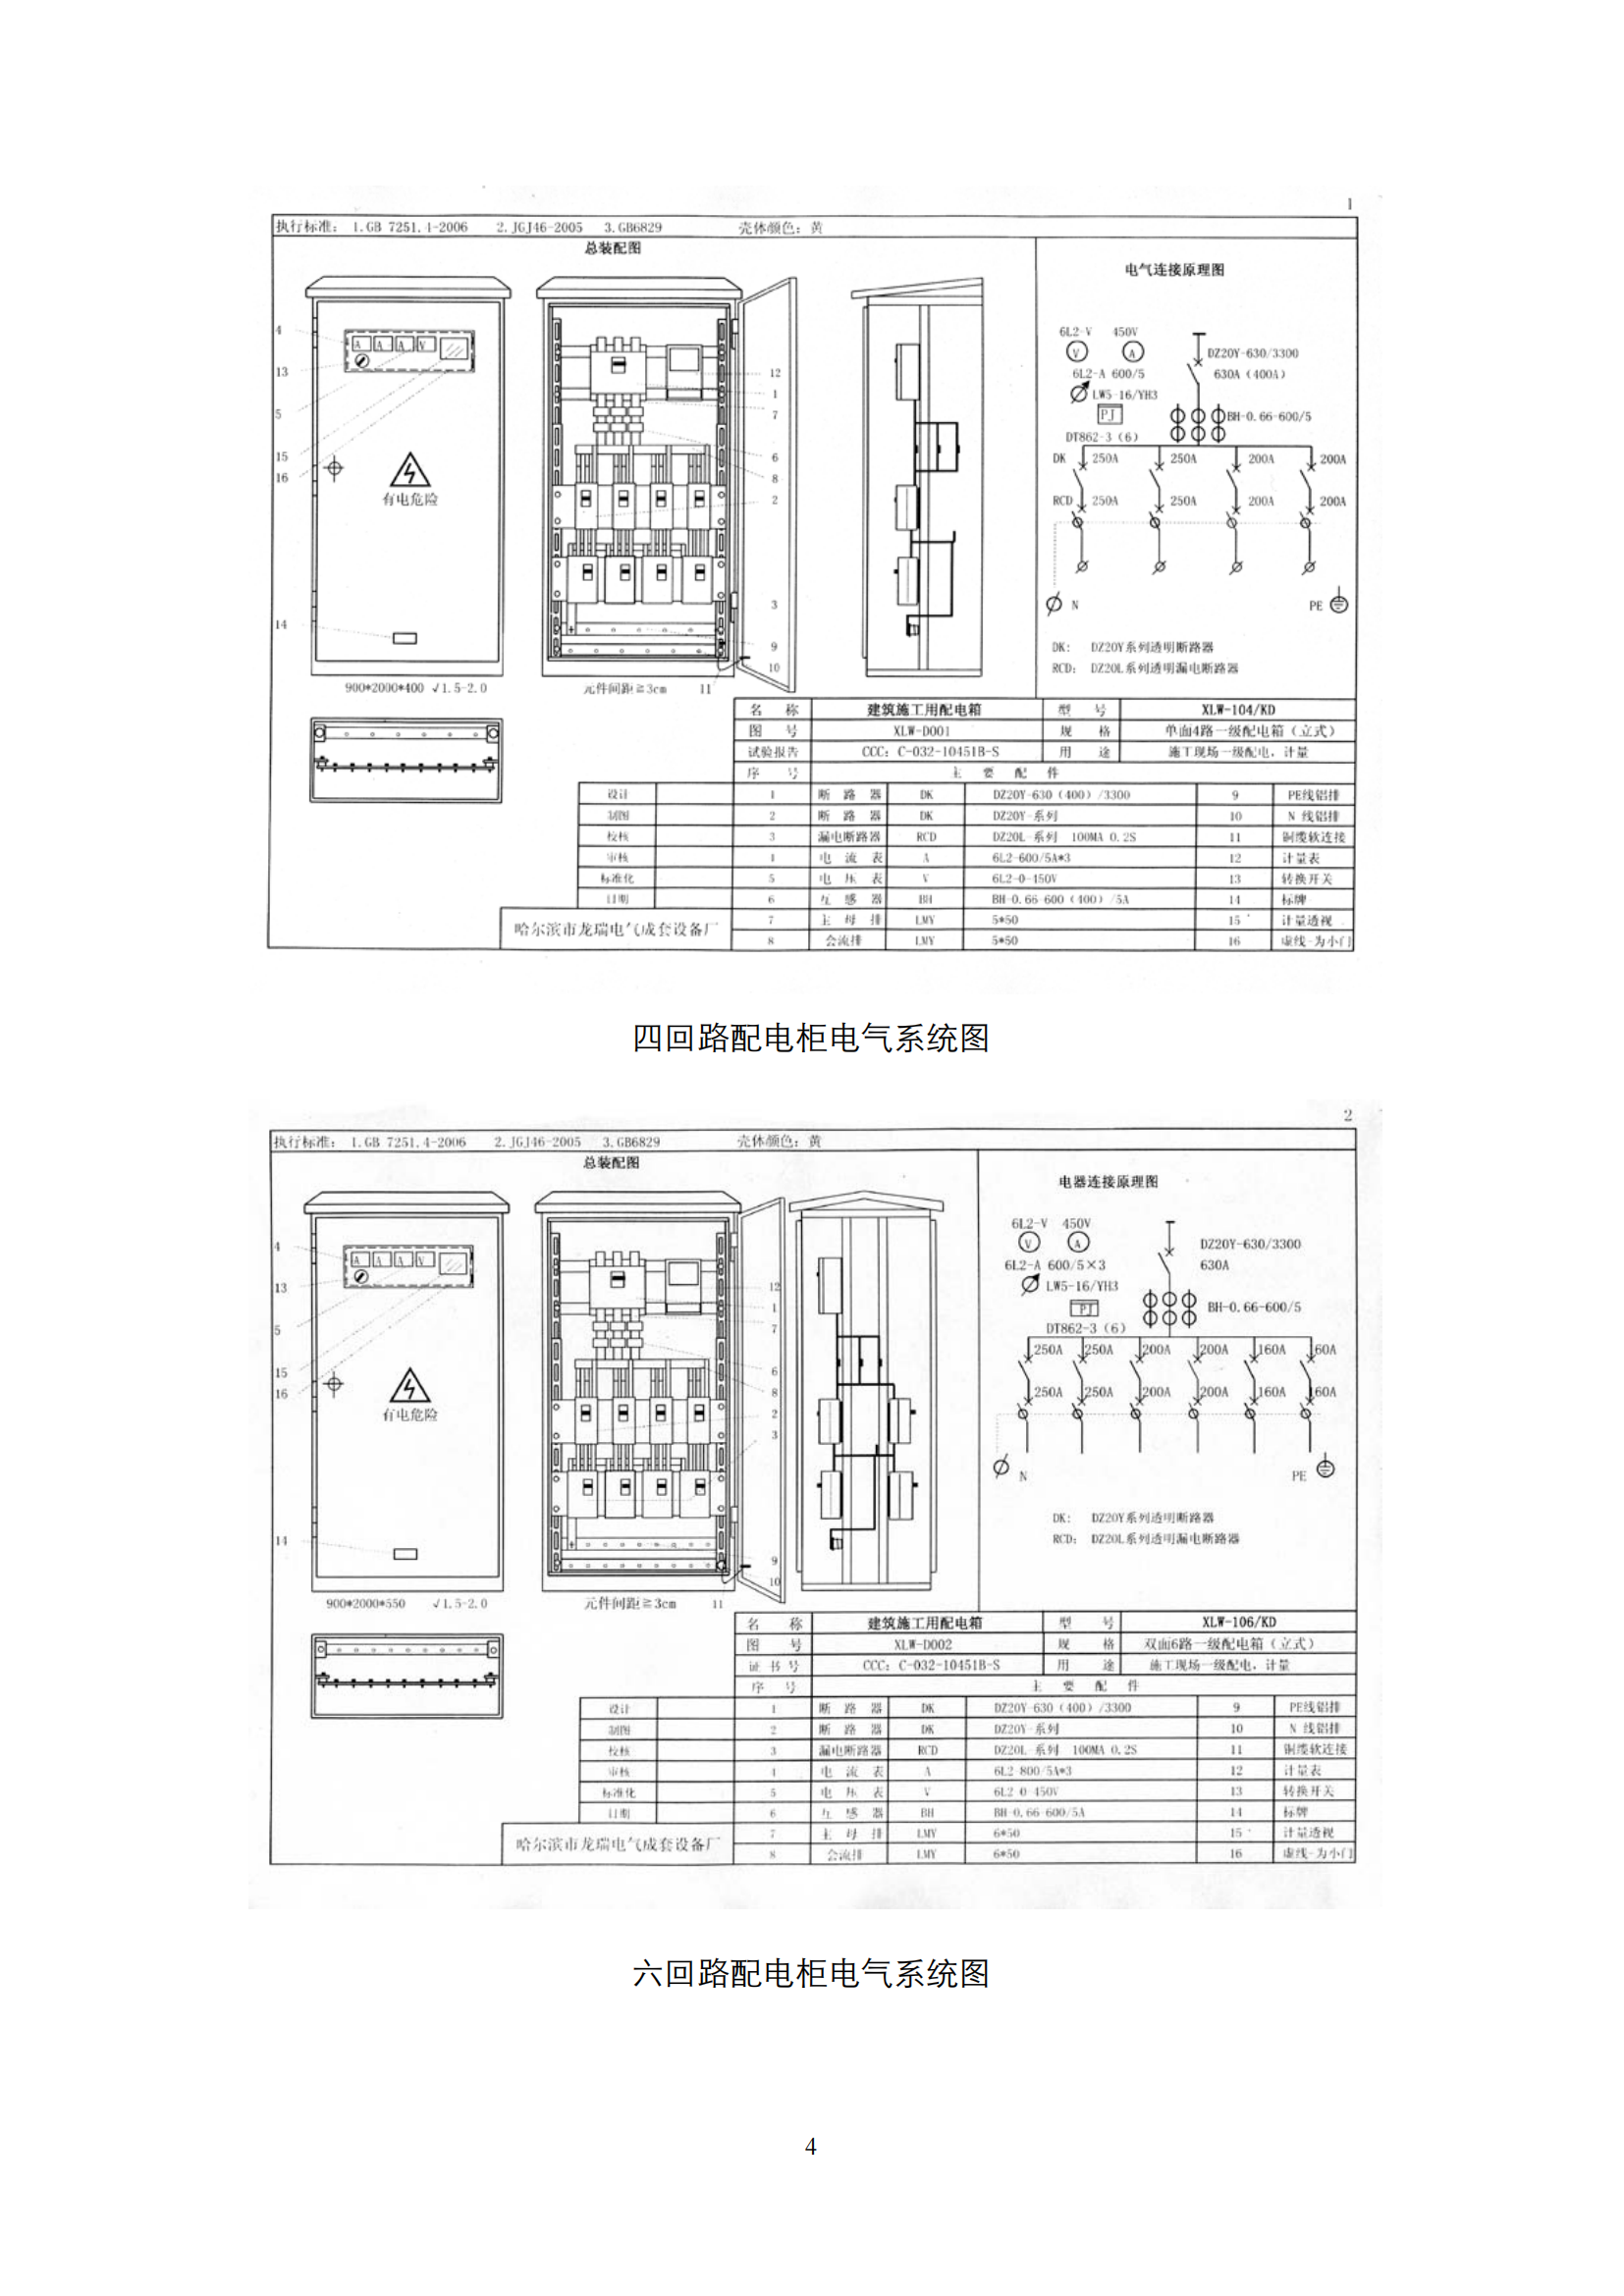 施工现场临时用电配电箱标准化配置图集插图(4)